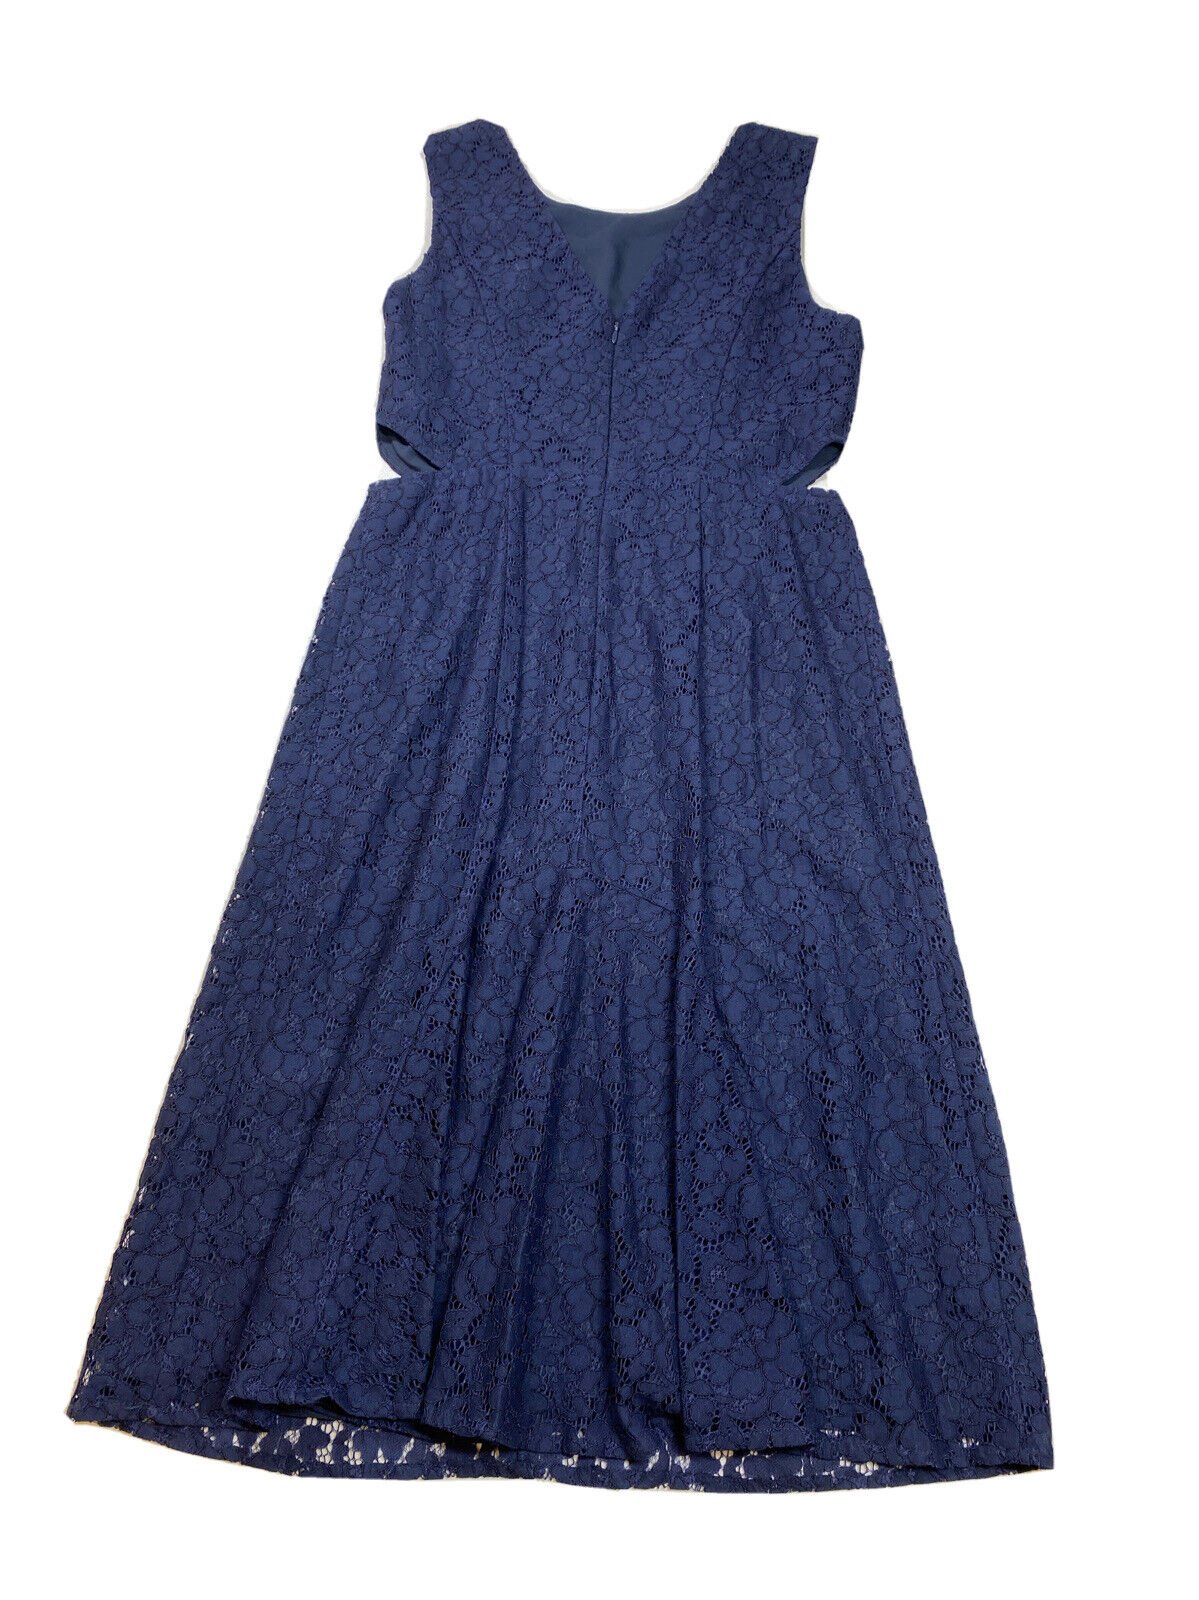 NEW Rachel Roy Women's Navy Blue Lace Side Cutout Sheath Dress - 8